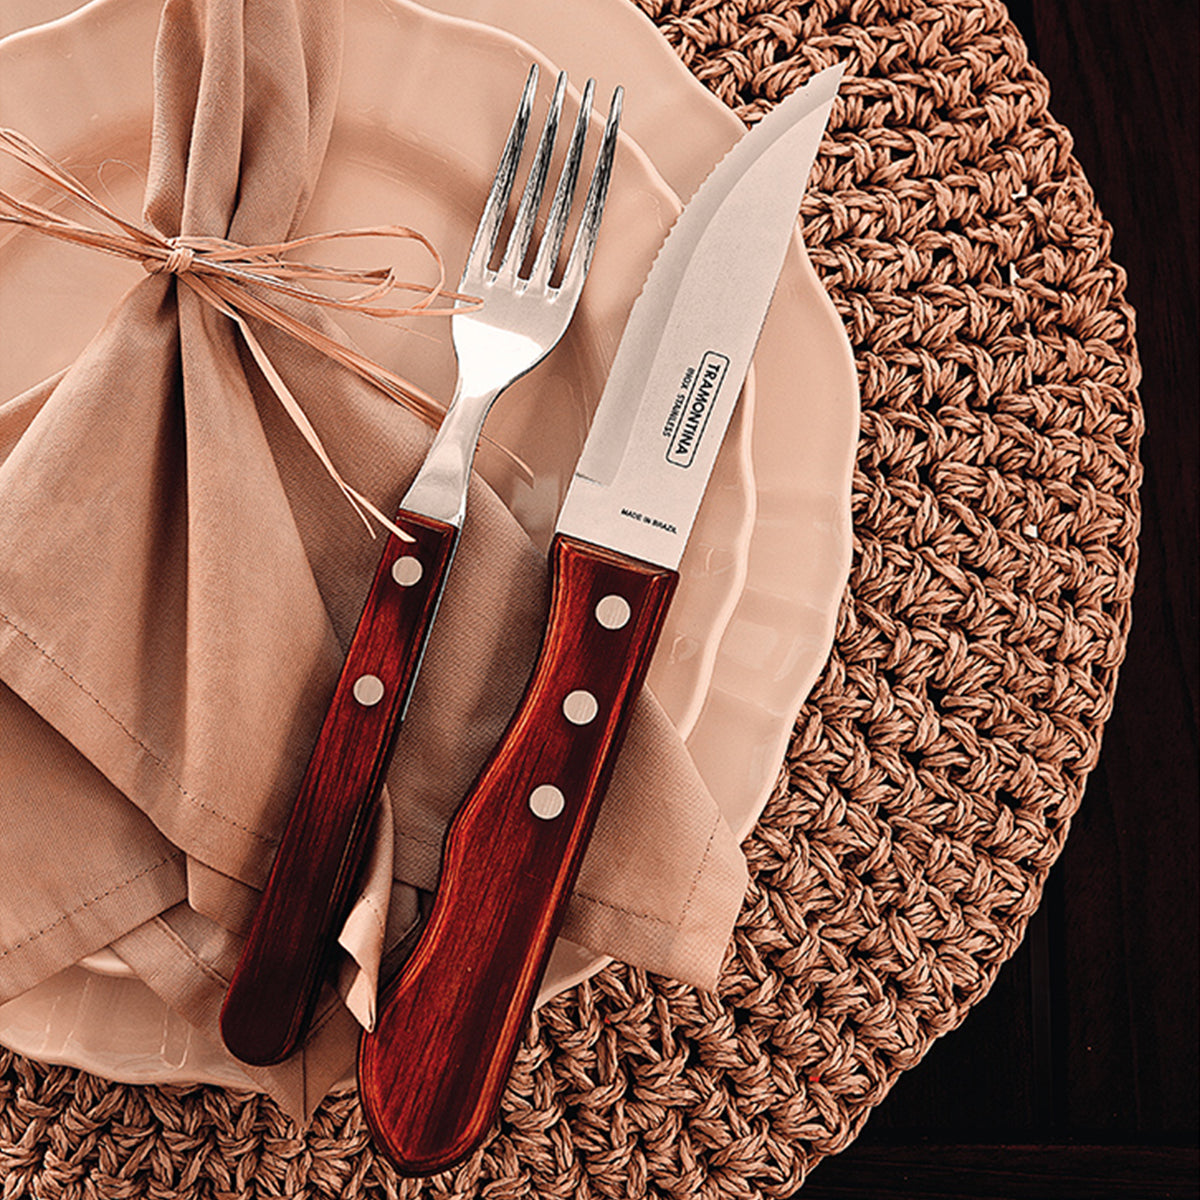 Cuchillo de Mesa Ancho para Steak de 5 Pulgadas Polywood